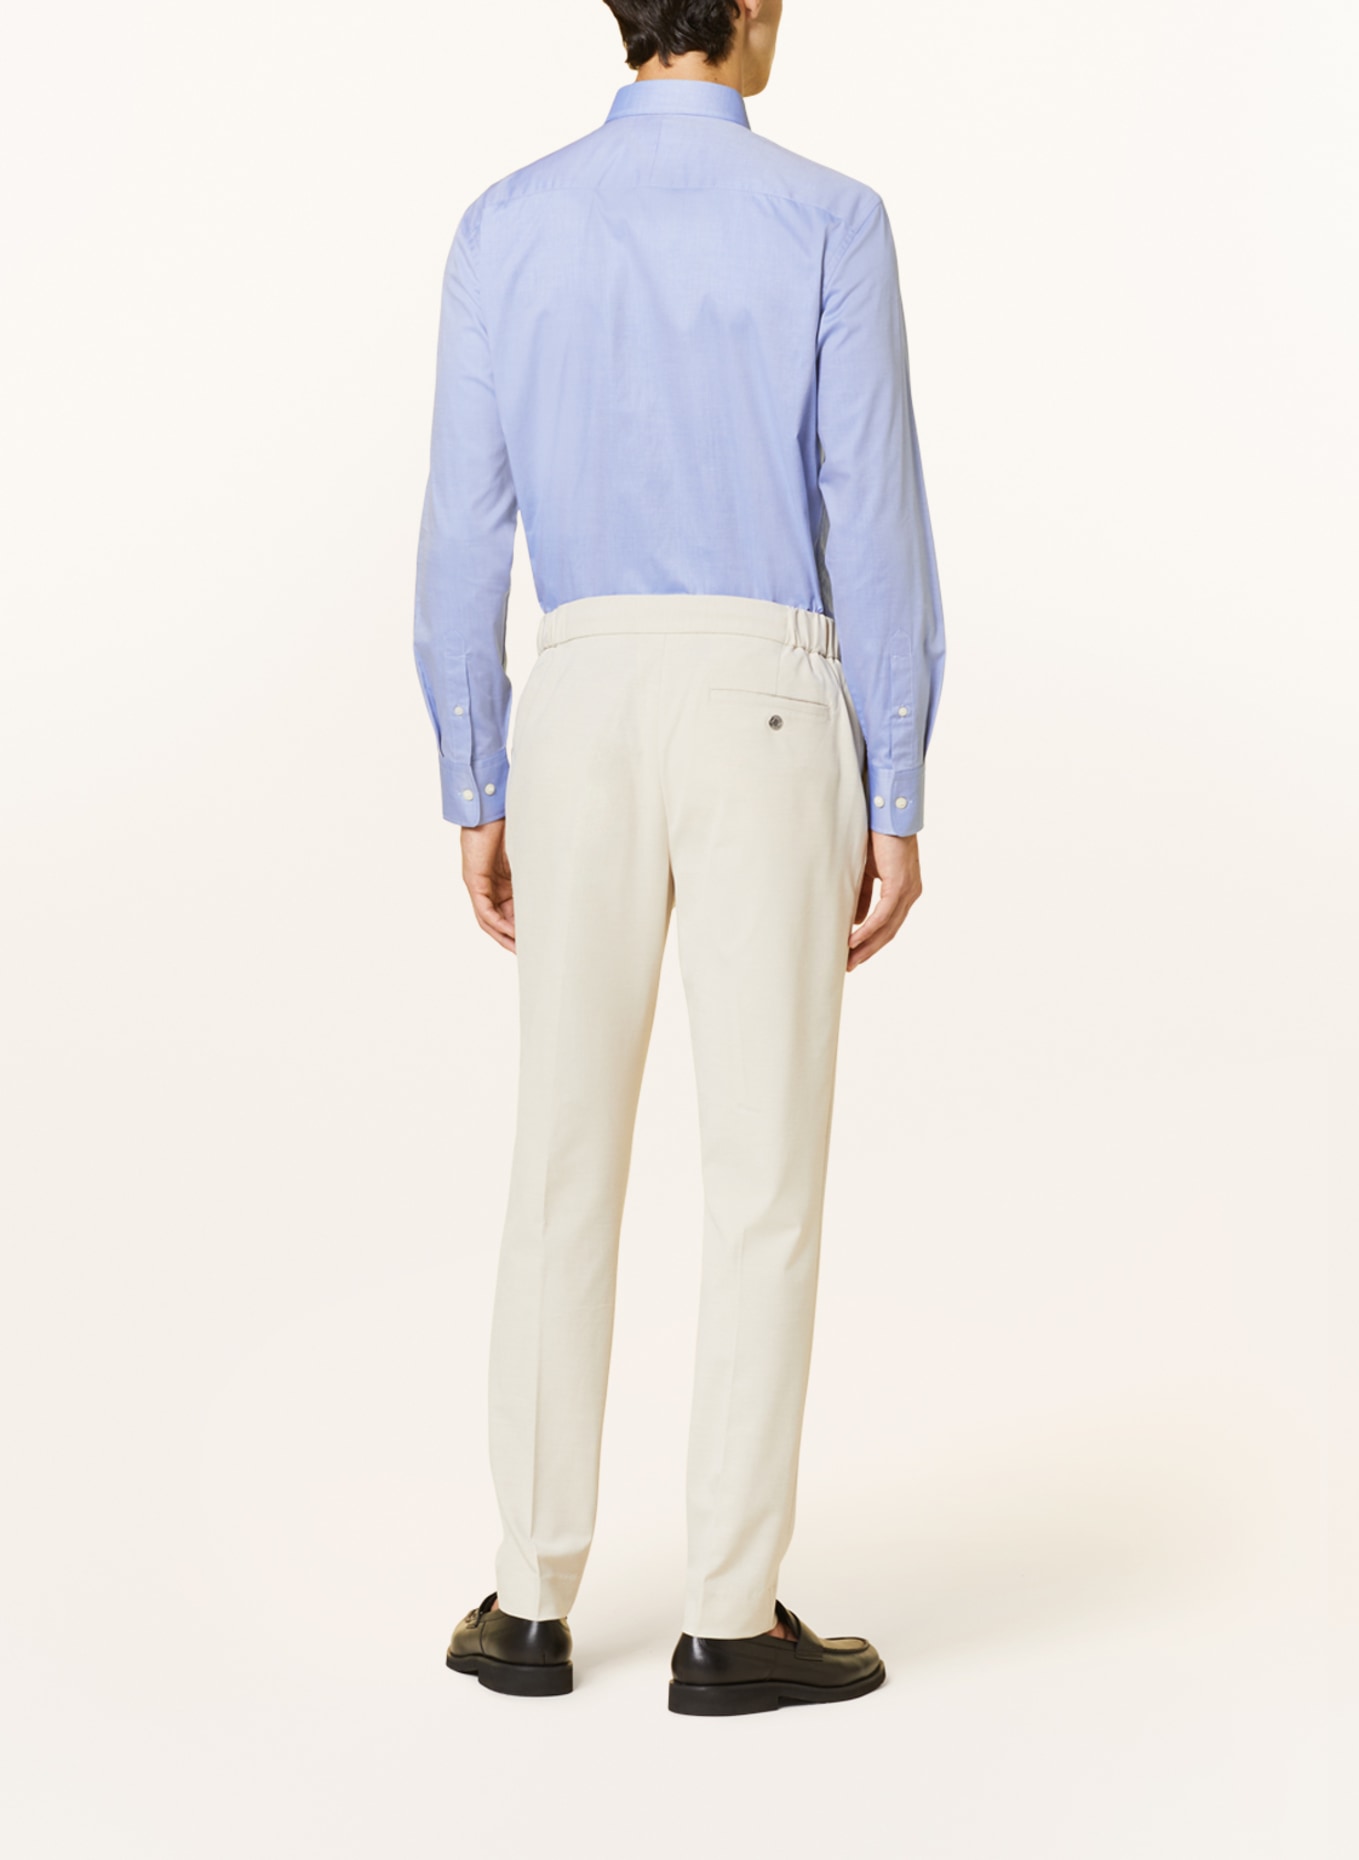 TIGER OF SWEDEN Shirt ADLEY slim fit, Color: LIGHT BLUE (Image 3)